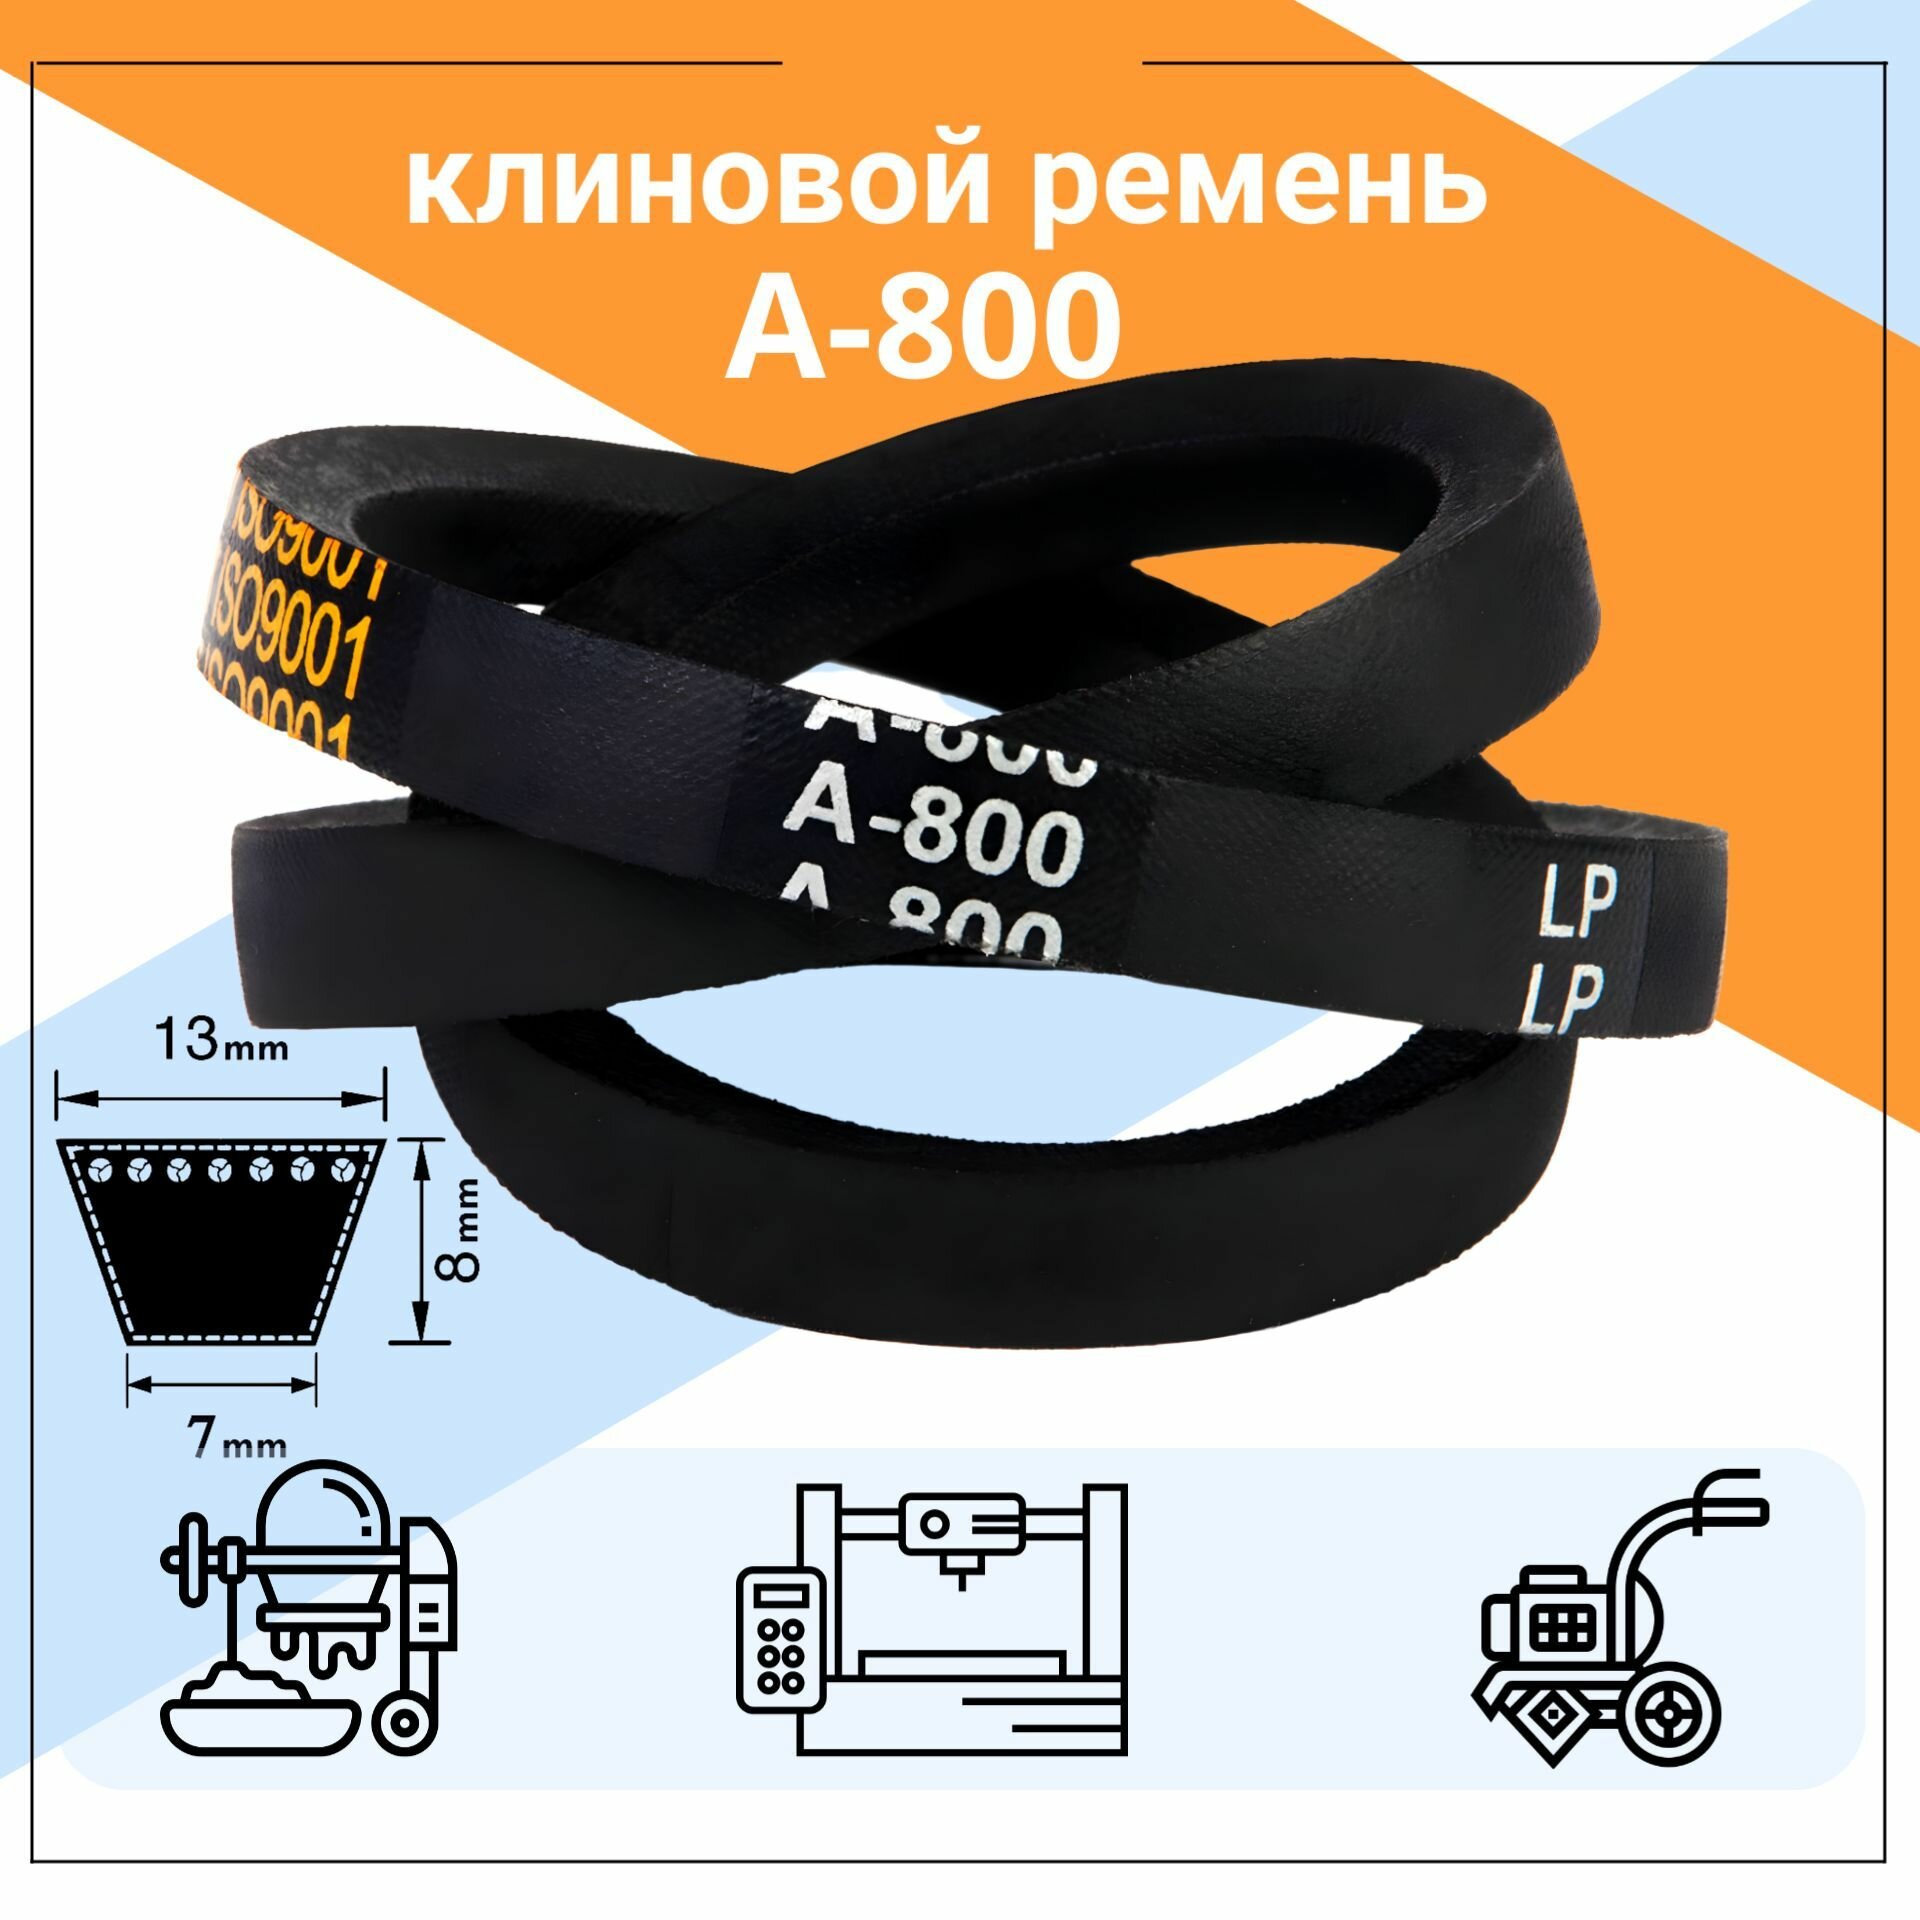 Клиновой ремень А-800 Lp / 800 Li А800, A800